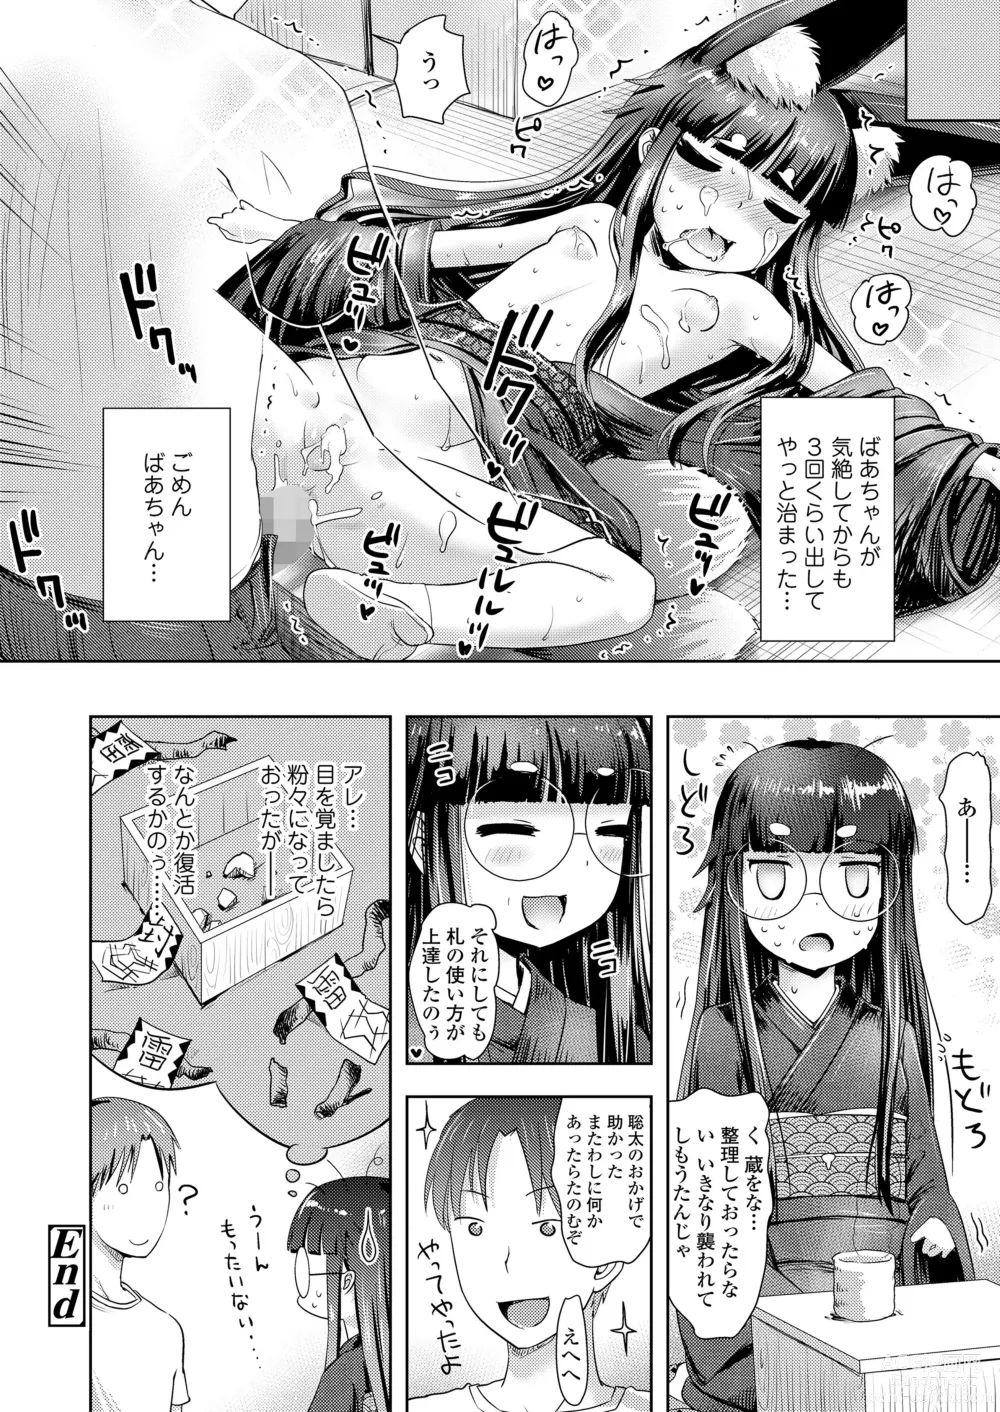 Page 192 of manga Towako Oboro Emaki 14